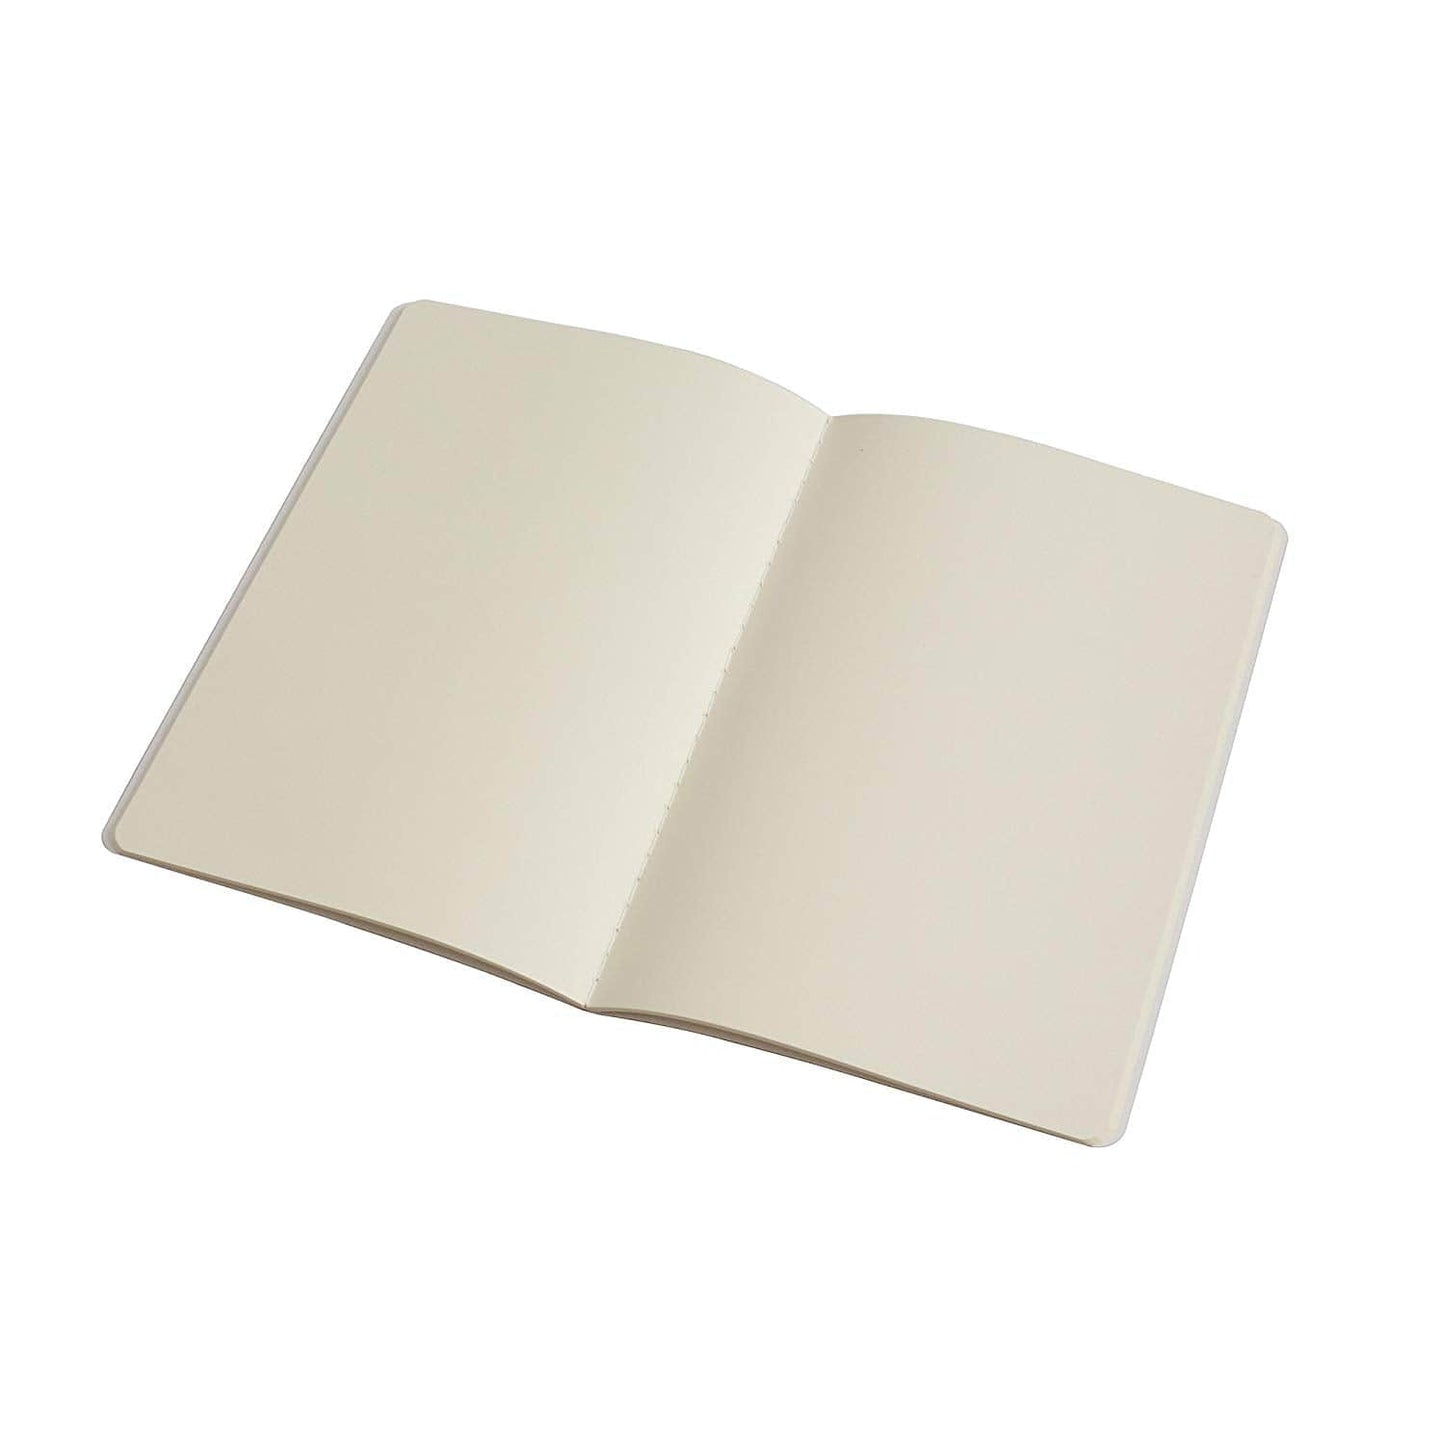 PinkPolish Design Notebook "Towering" Rainbow Inspired Notebook / Sketchbook / Journal